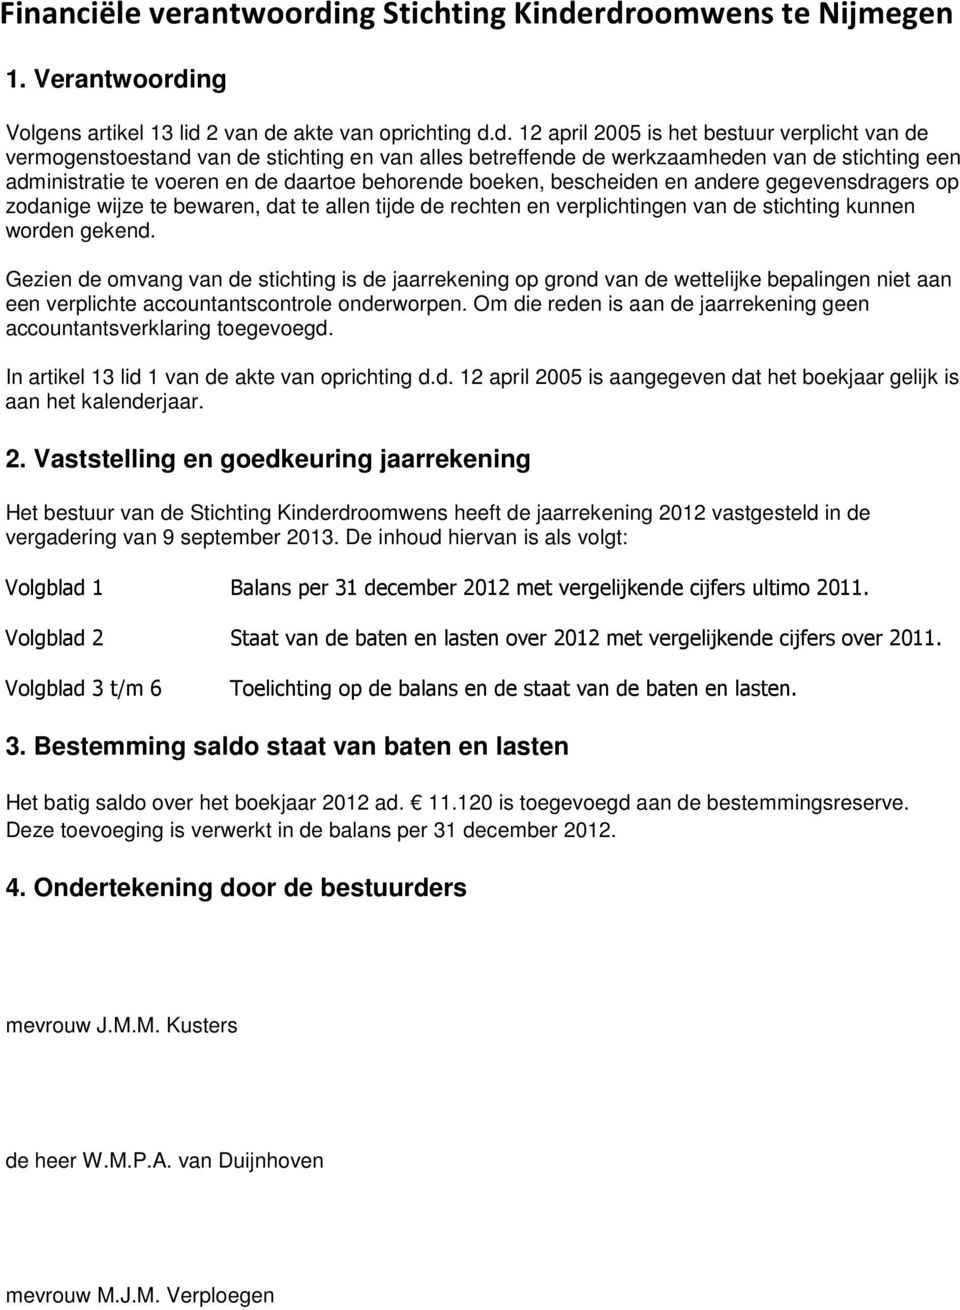 rdroomwens te Nijmegen 1. Verantwoording Volgens artikel 13 lid 2 van de akte van oprichting d.d. 12 april 2005 is het bestuur verplicht van de vermogenstoestand van de stichting en van alles